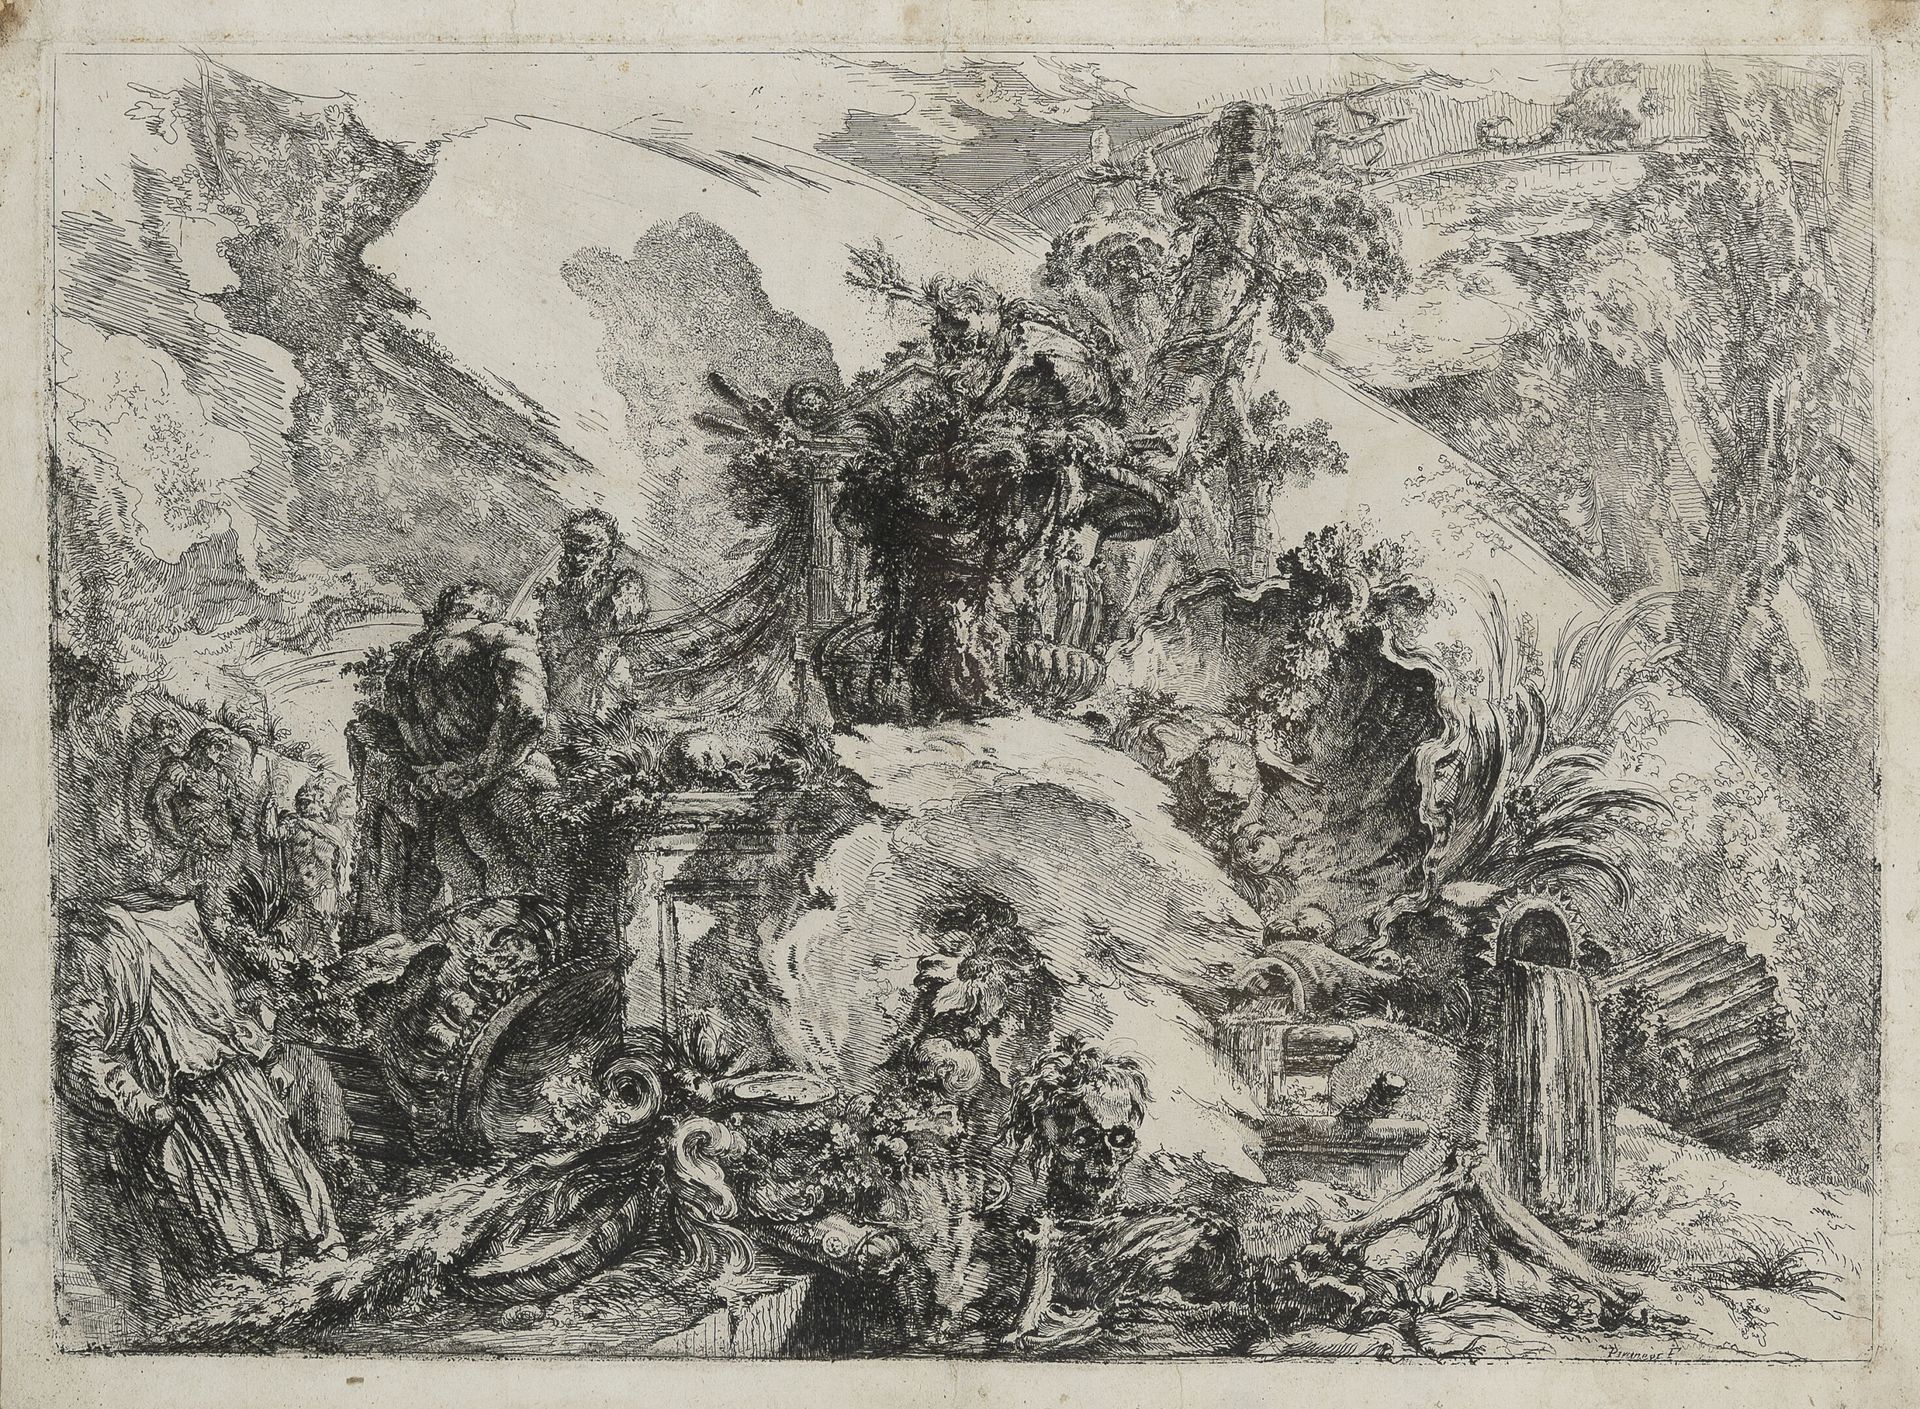 D'APRÈS JEAN-BAPTISTE PIRANESE (1720-1778) Capriccio mit Grotesken, Ruinen und B&hellip;